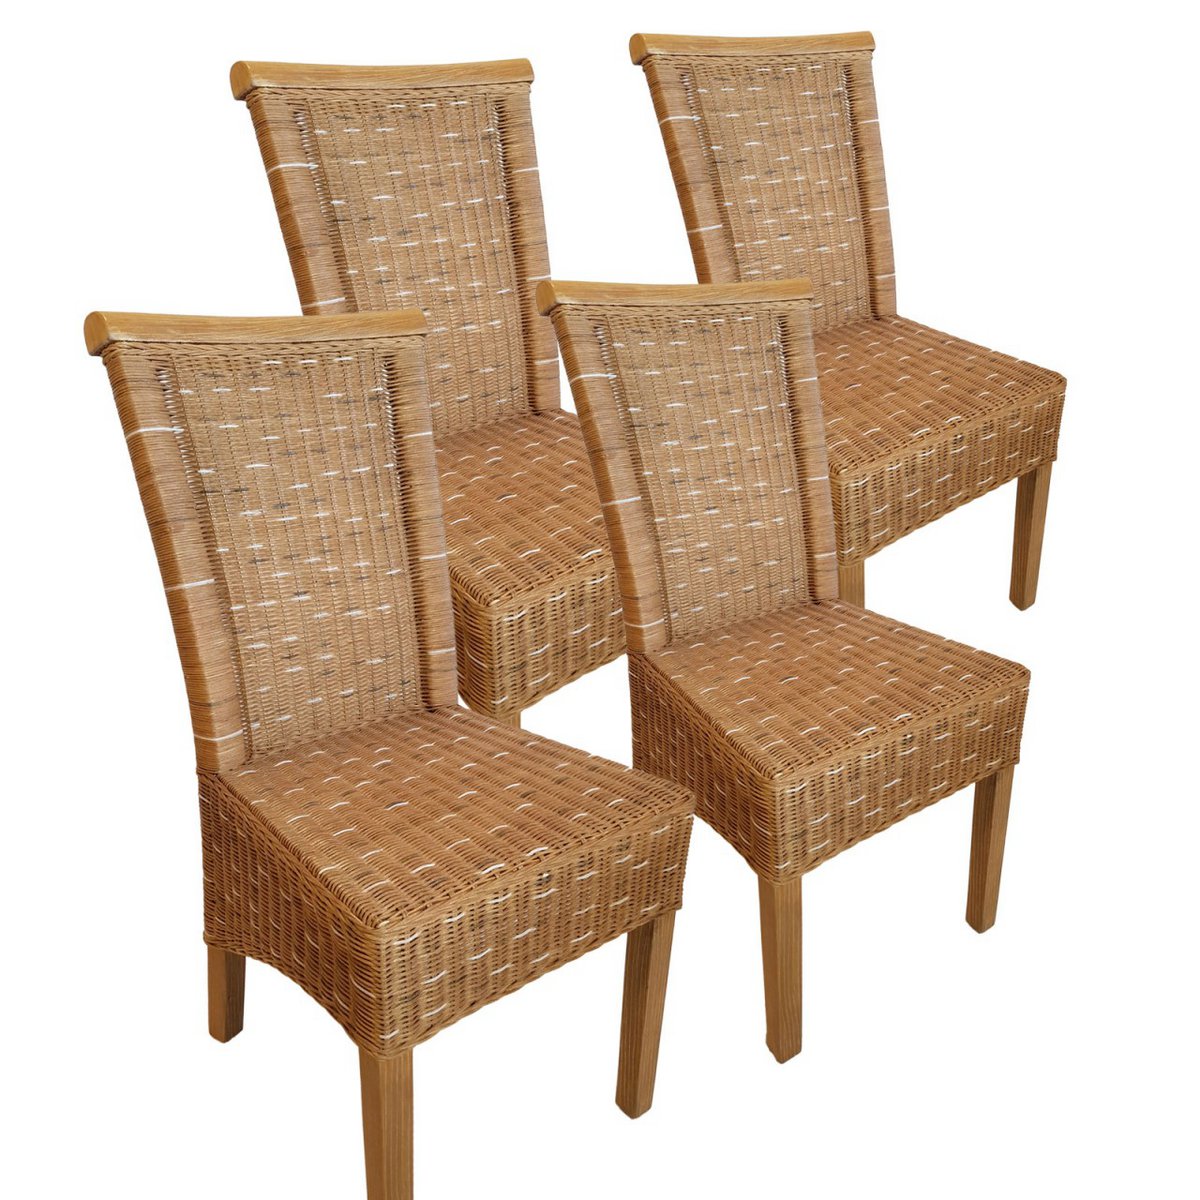 Esszimmer-Stühle Set Rattanstühle Perth 4 Stück braun Sitzkissen Leinen weiß